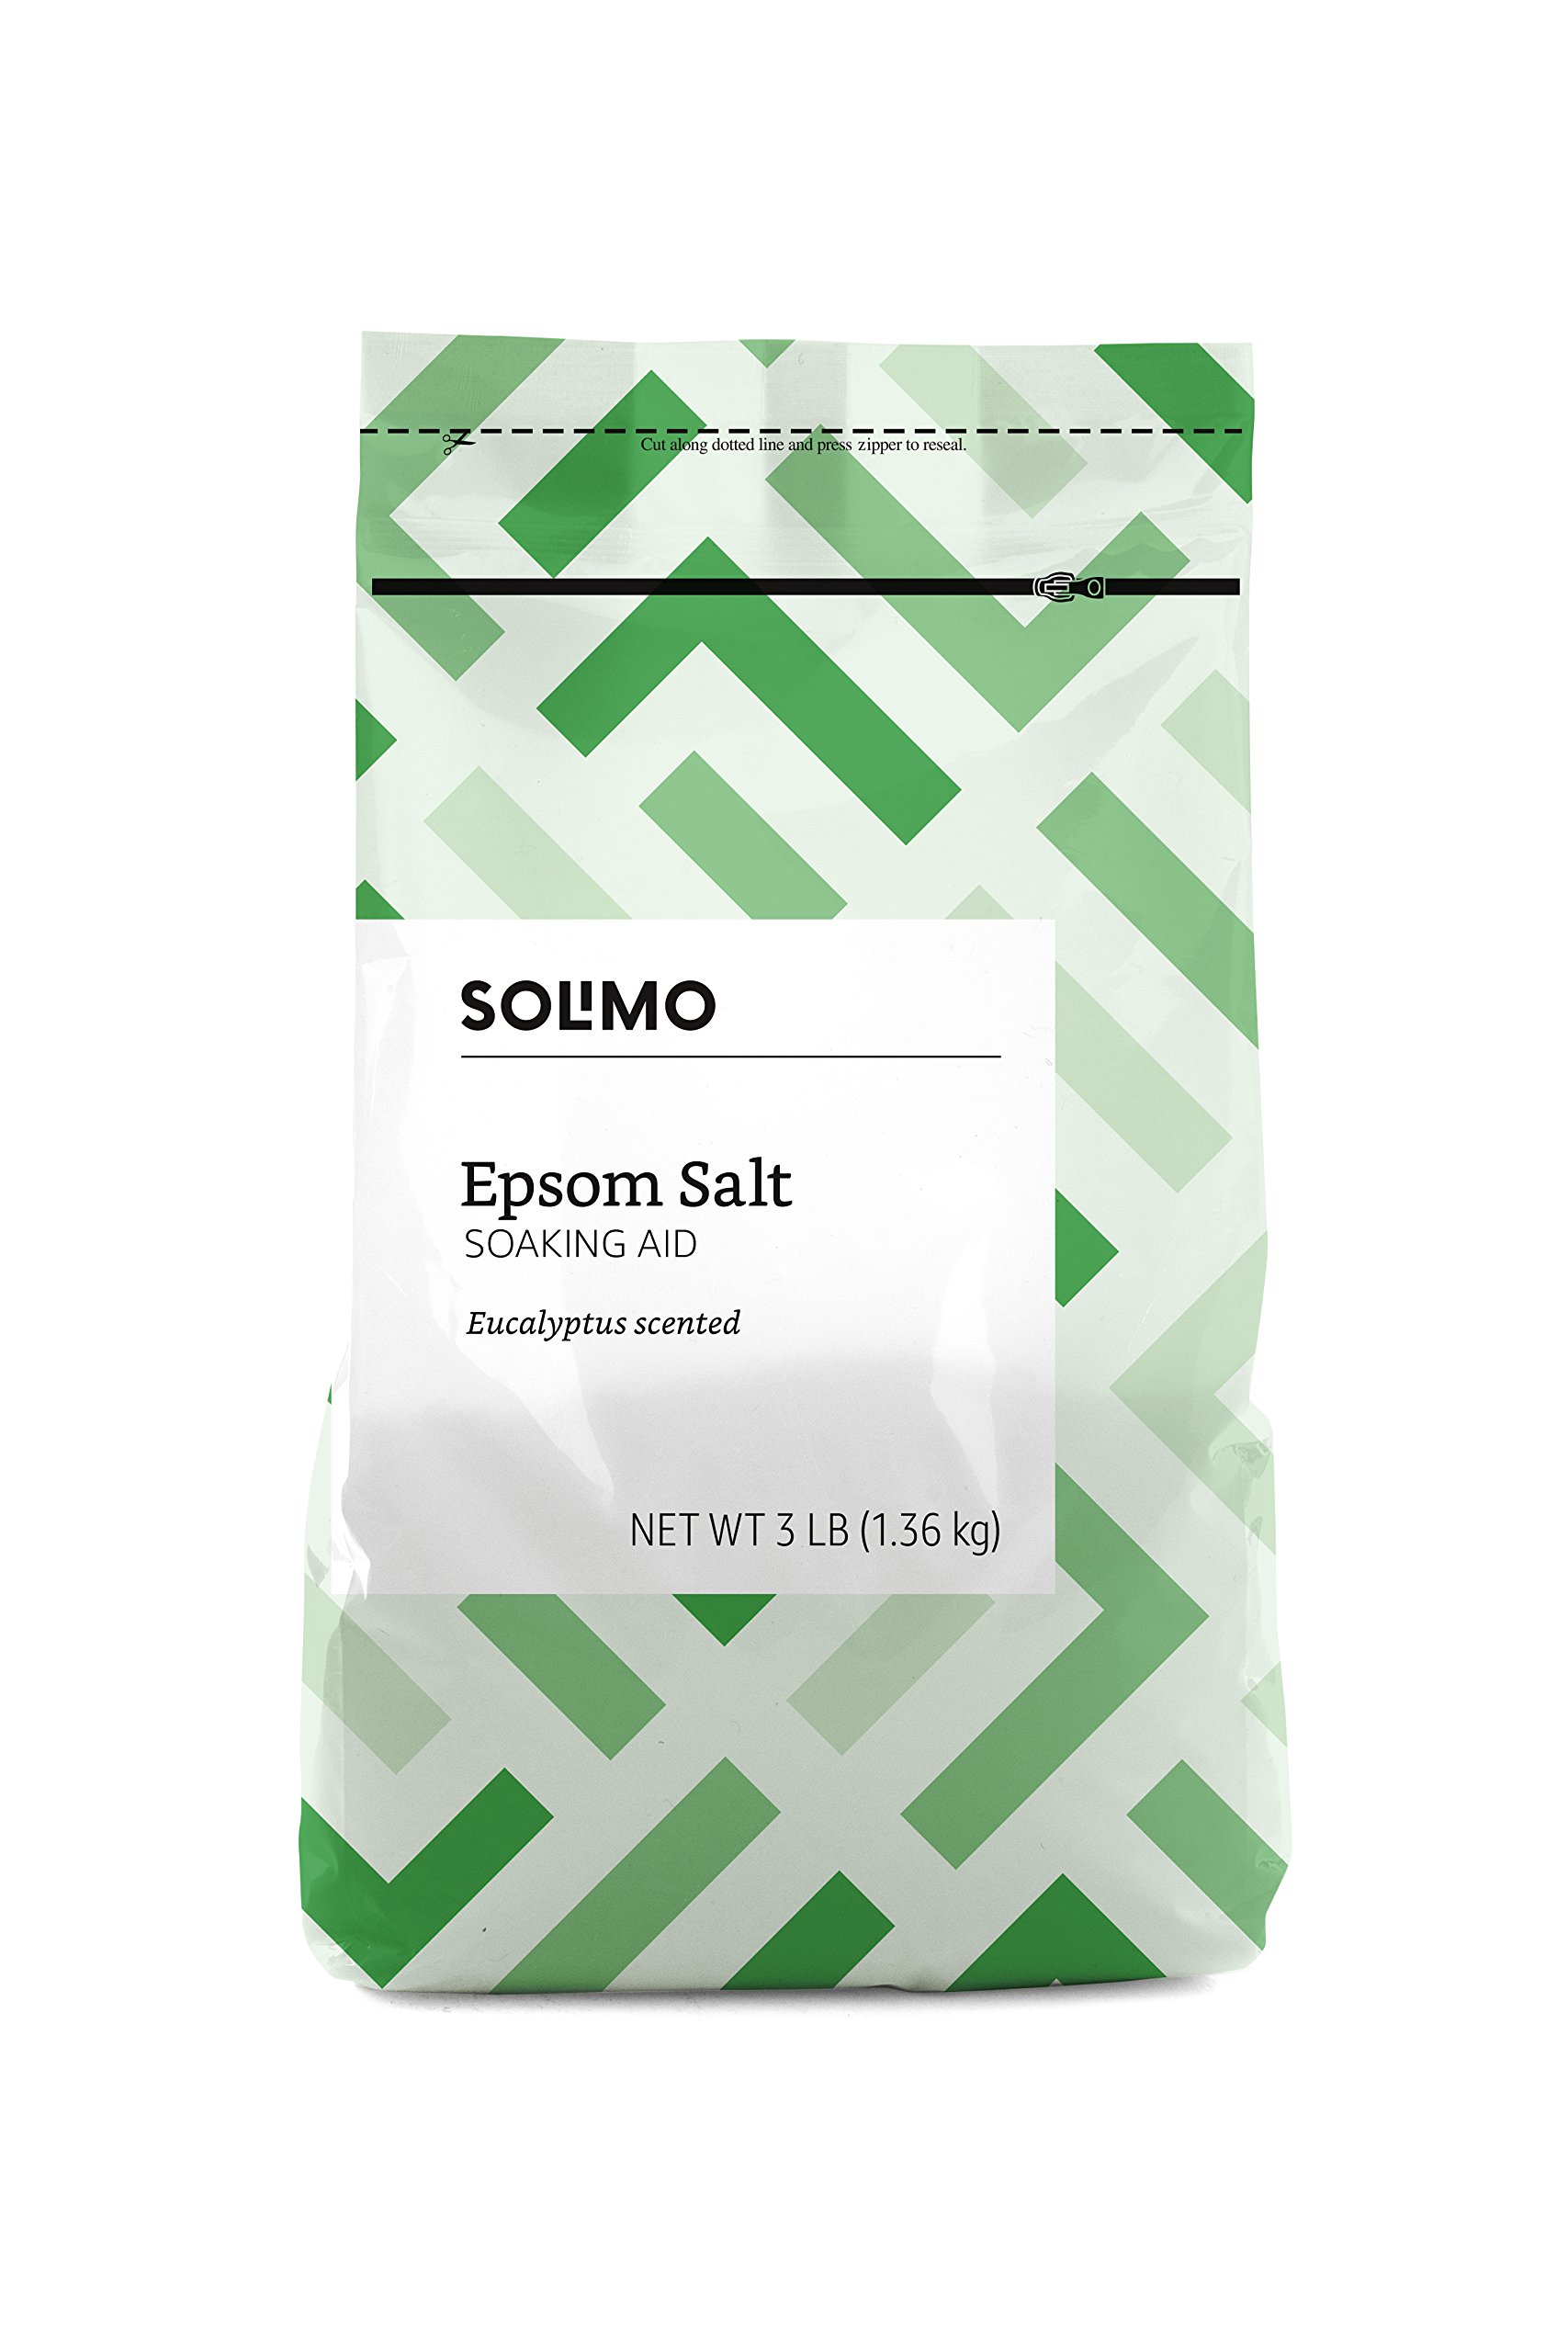 Amazon Brand-Solimo Epsom Salt Soak, Magnesium Sulfate USP, 8 Pound, 128 oz, Pack of 3 & Amazon Basics Epsom Salt Soaking Aid, Lavender Scented & Amazon Brand-Epsom Salt Soaking Aid